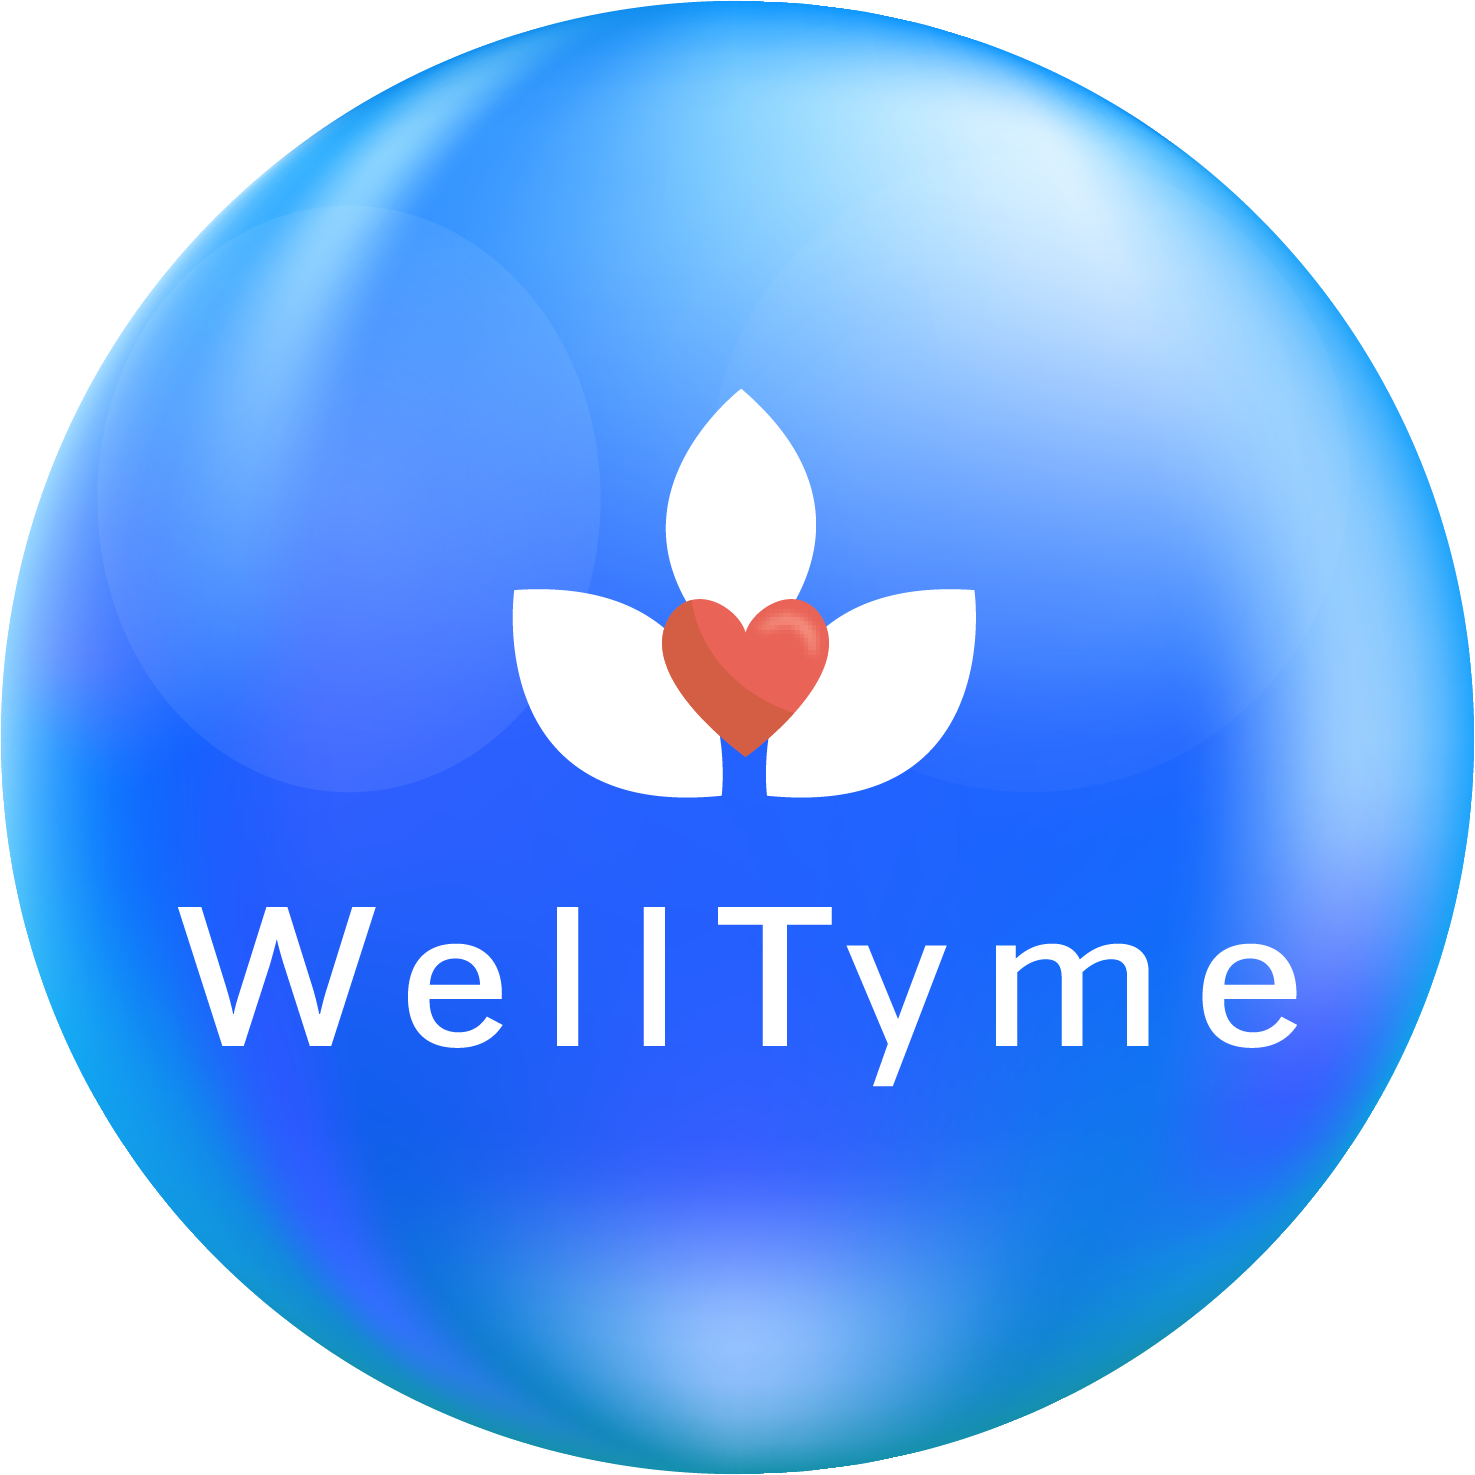 WellTyme